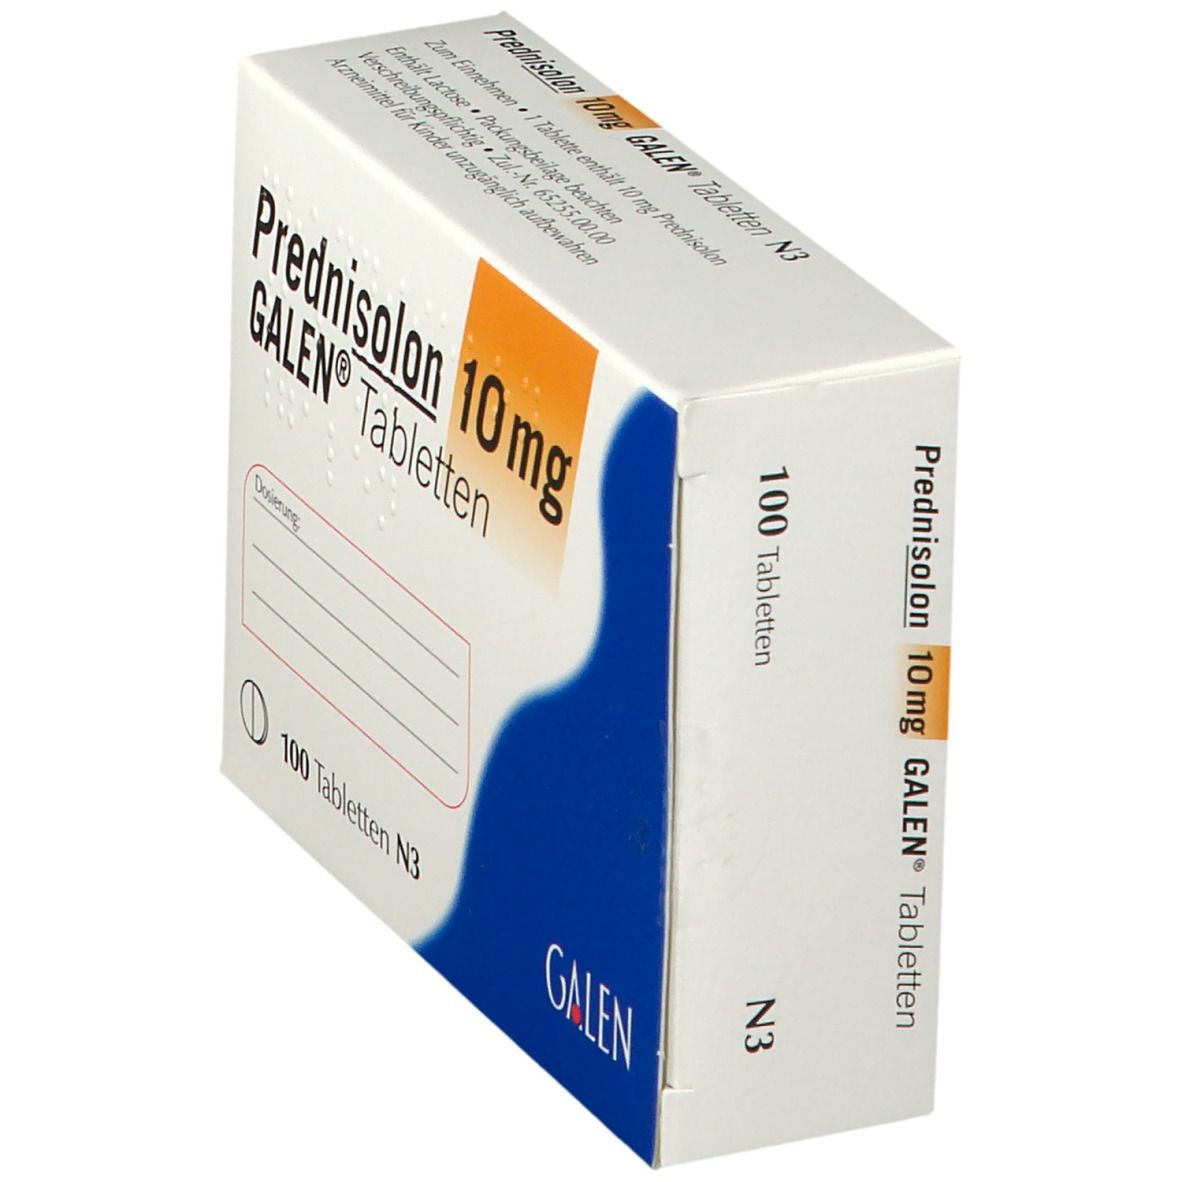 Prednisolon 10 mg GALEN®